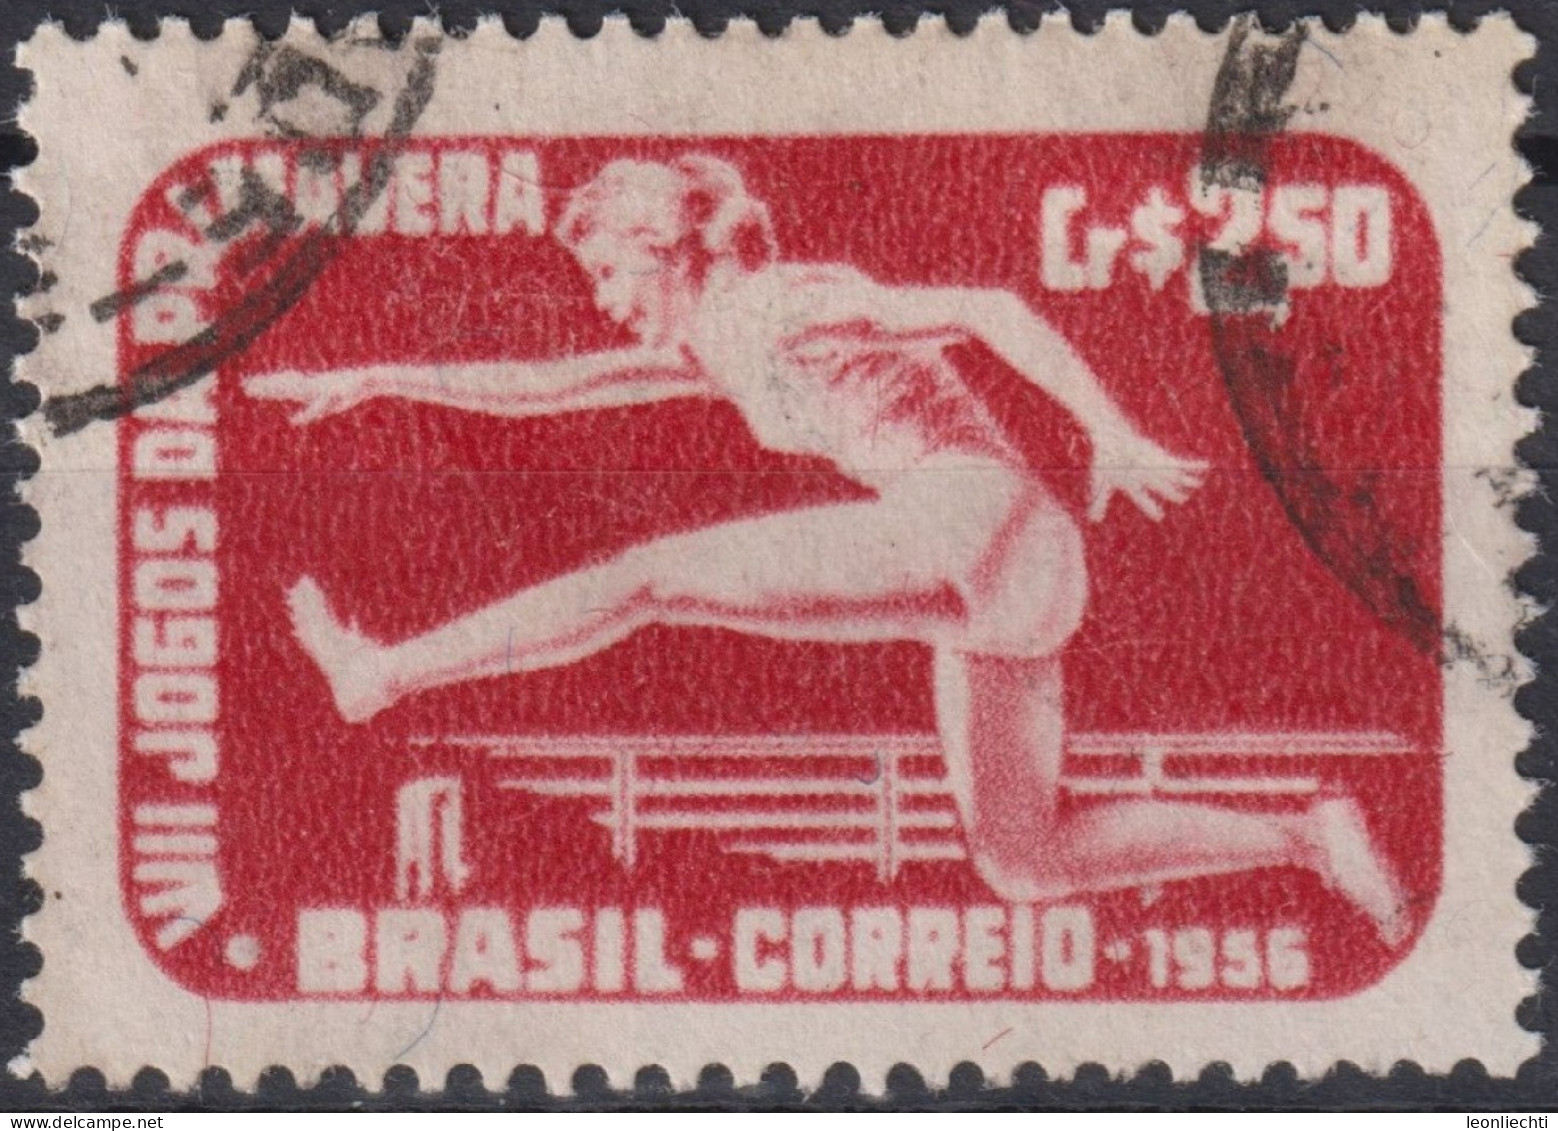 1956 Brasilien ° Mi:BR 898, Sn:BR 840, Yt:BR 624, 8th Spring Games /RJ, Sport - Oblitérés